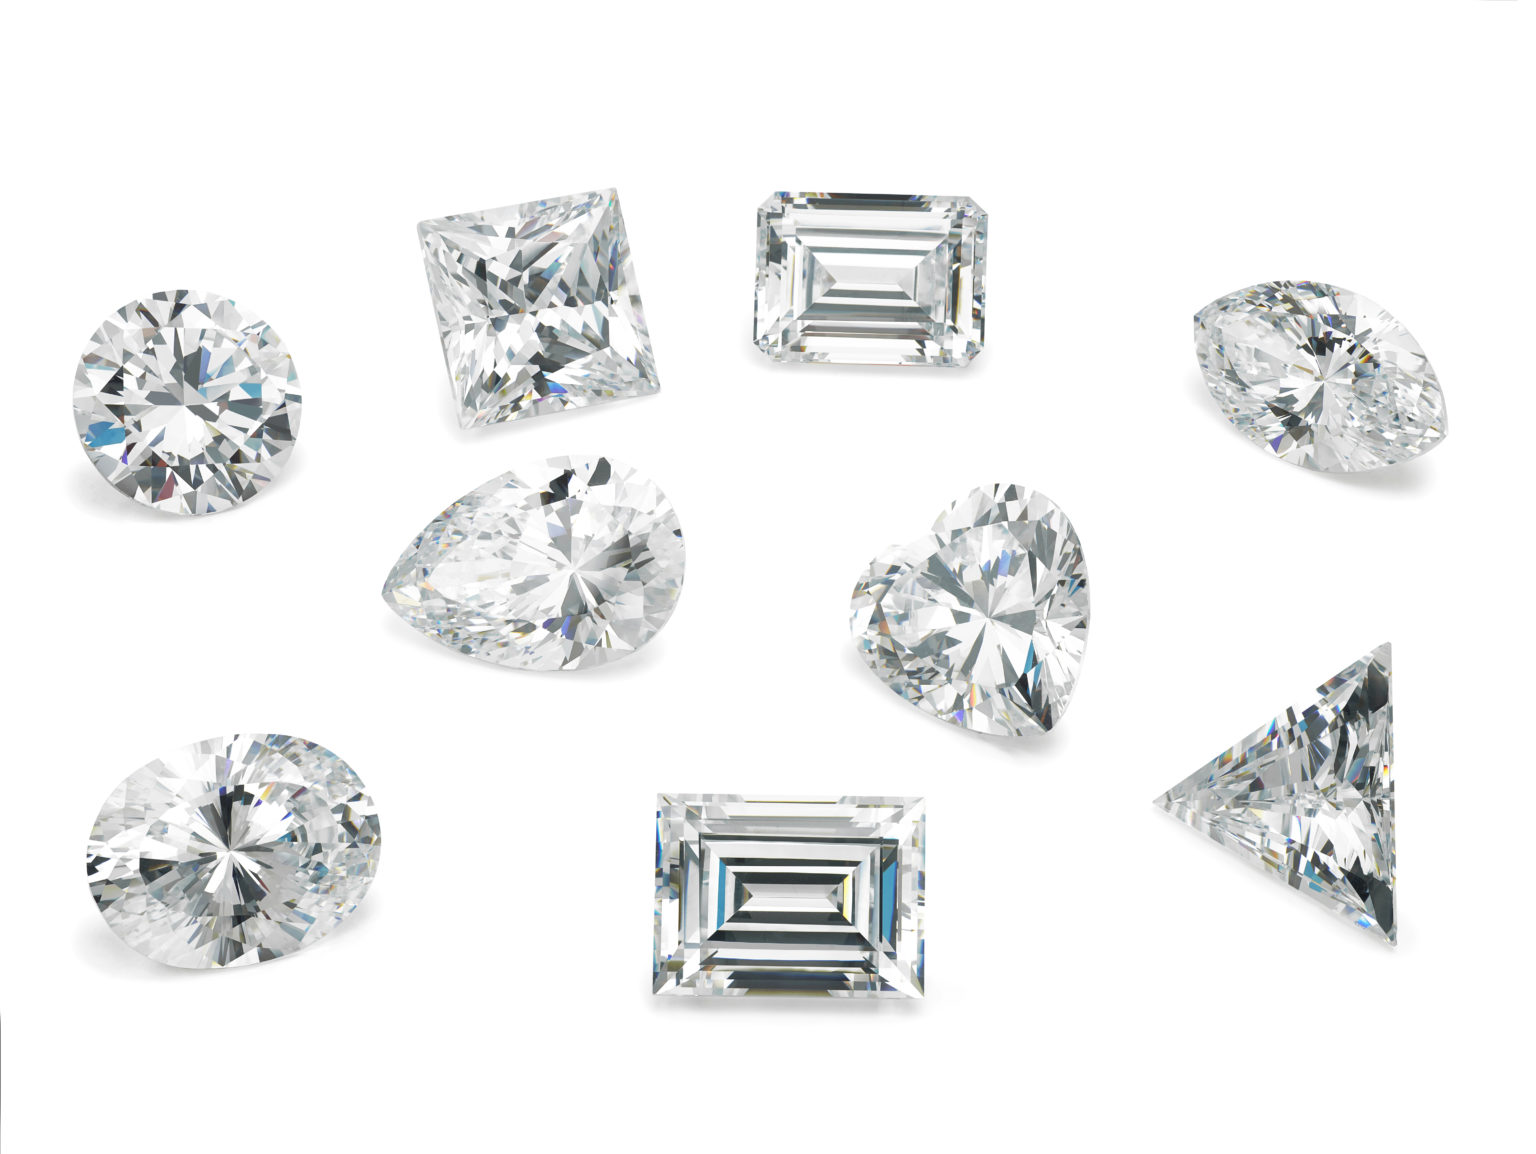 Diamond Shapes Compared: Round Brilliant Vs Fancy Cut Diamonds